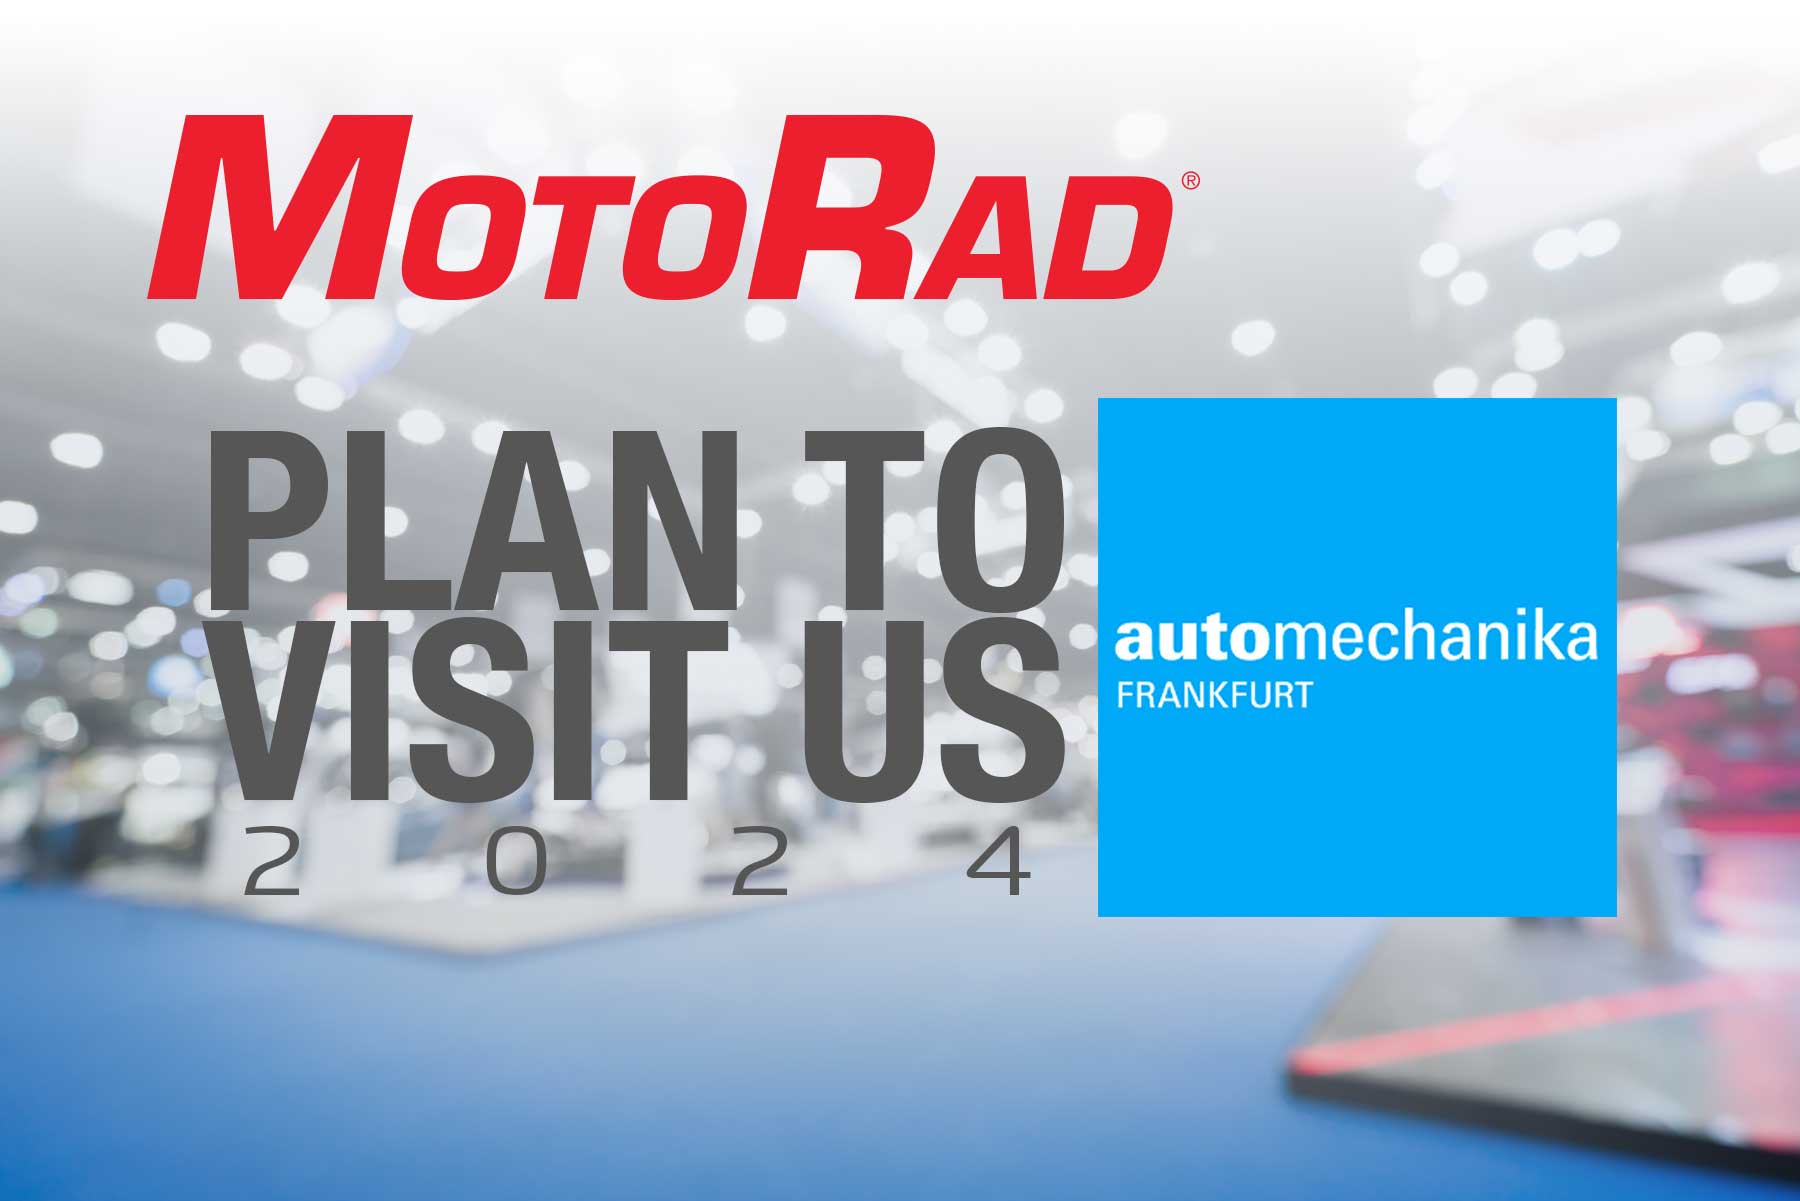 Prepárese para MotoRad en 2024 Automechanika: ¡expandiendo horizontes en Europa y EMEA!